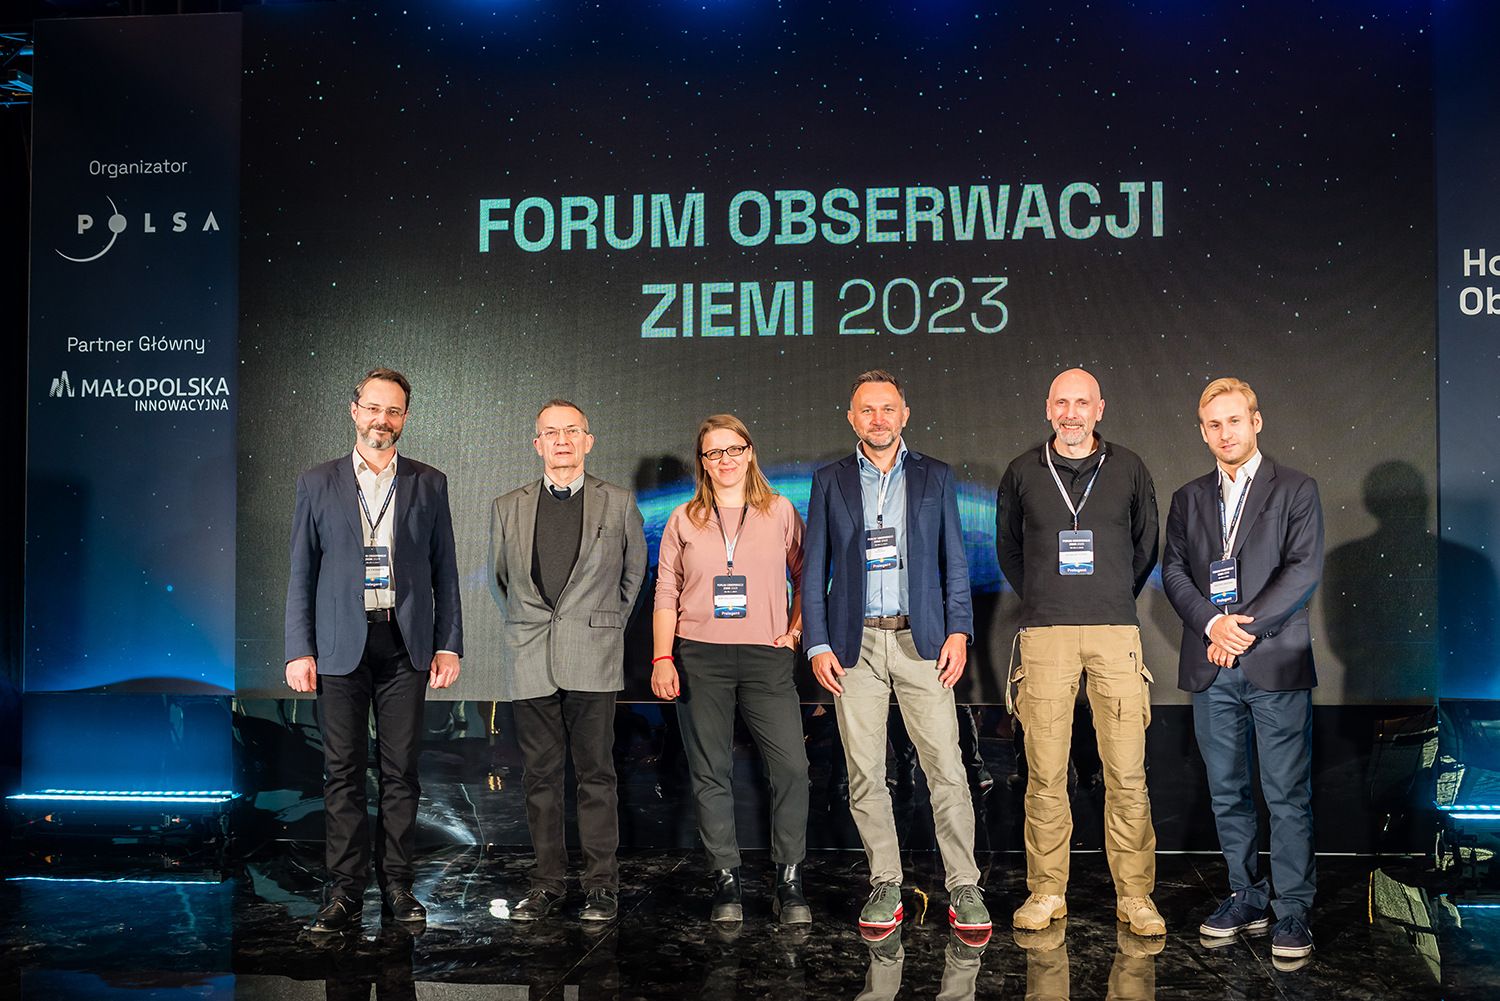 Forum Obserwacji Ziemi 2023